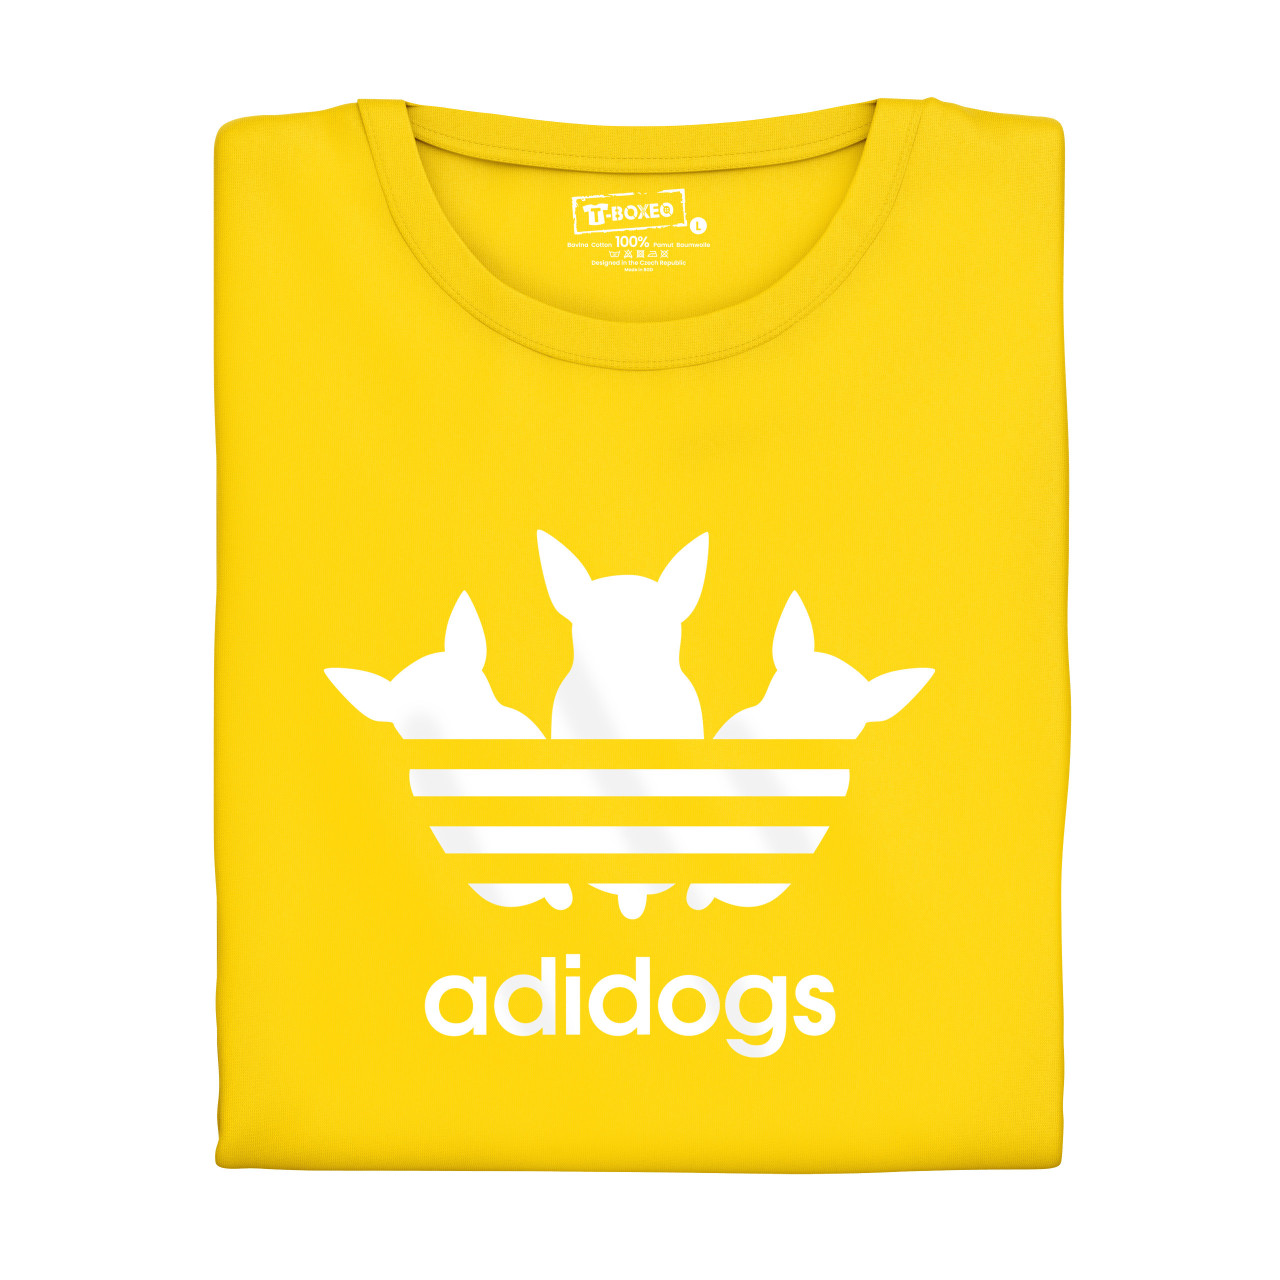 Pánské tričko s potiskem “Adidogs”